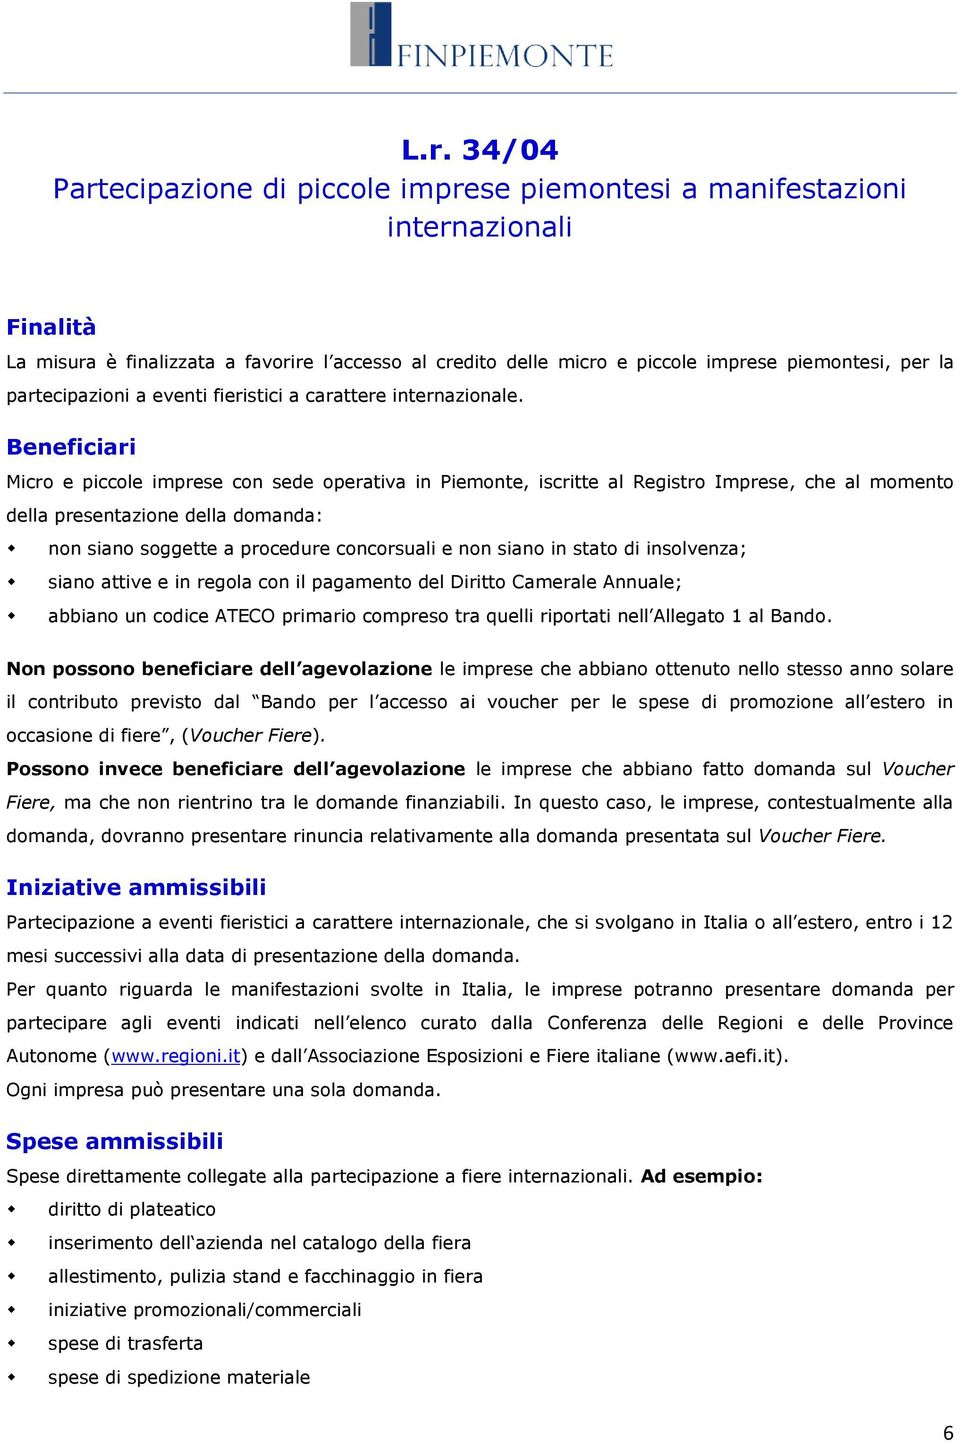 Beneficiari Micro e piccole imprese con sede operativa in Piemonte, iscritte al Registro Imprese, che al momento della presentazione della domanda: non siano soggette a procedure concorsuali e non